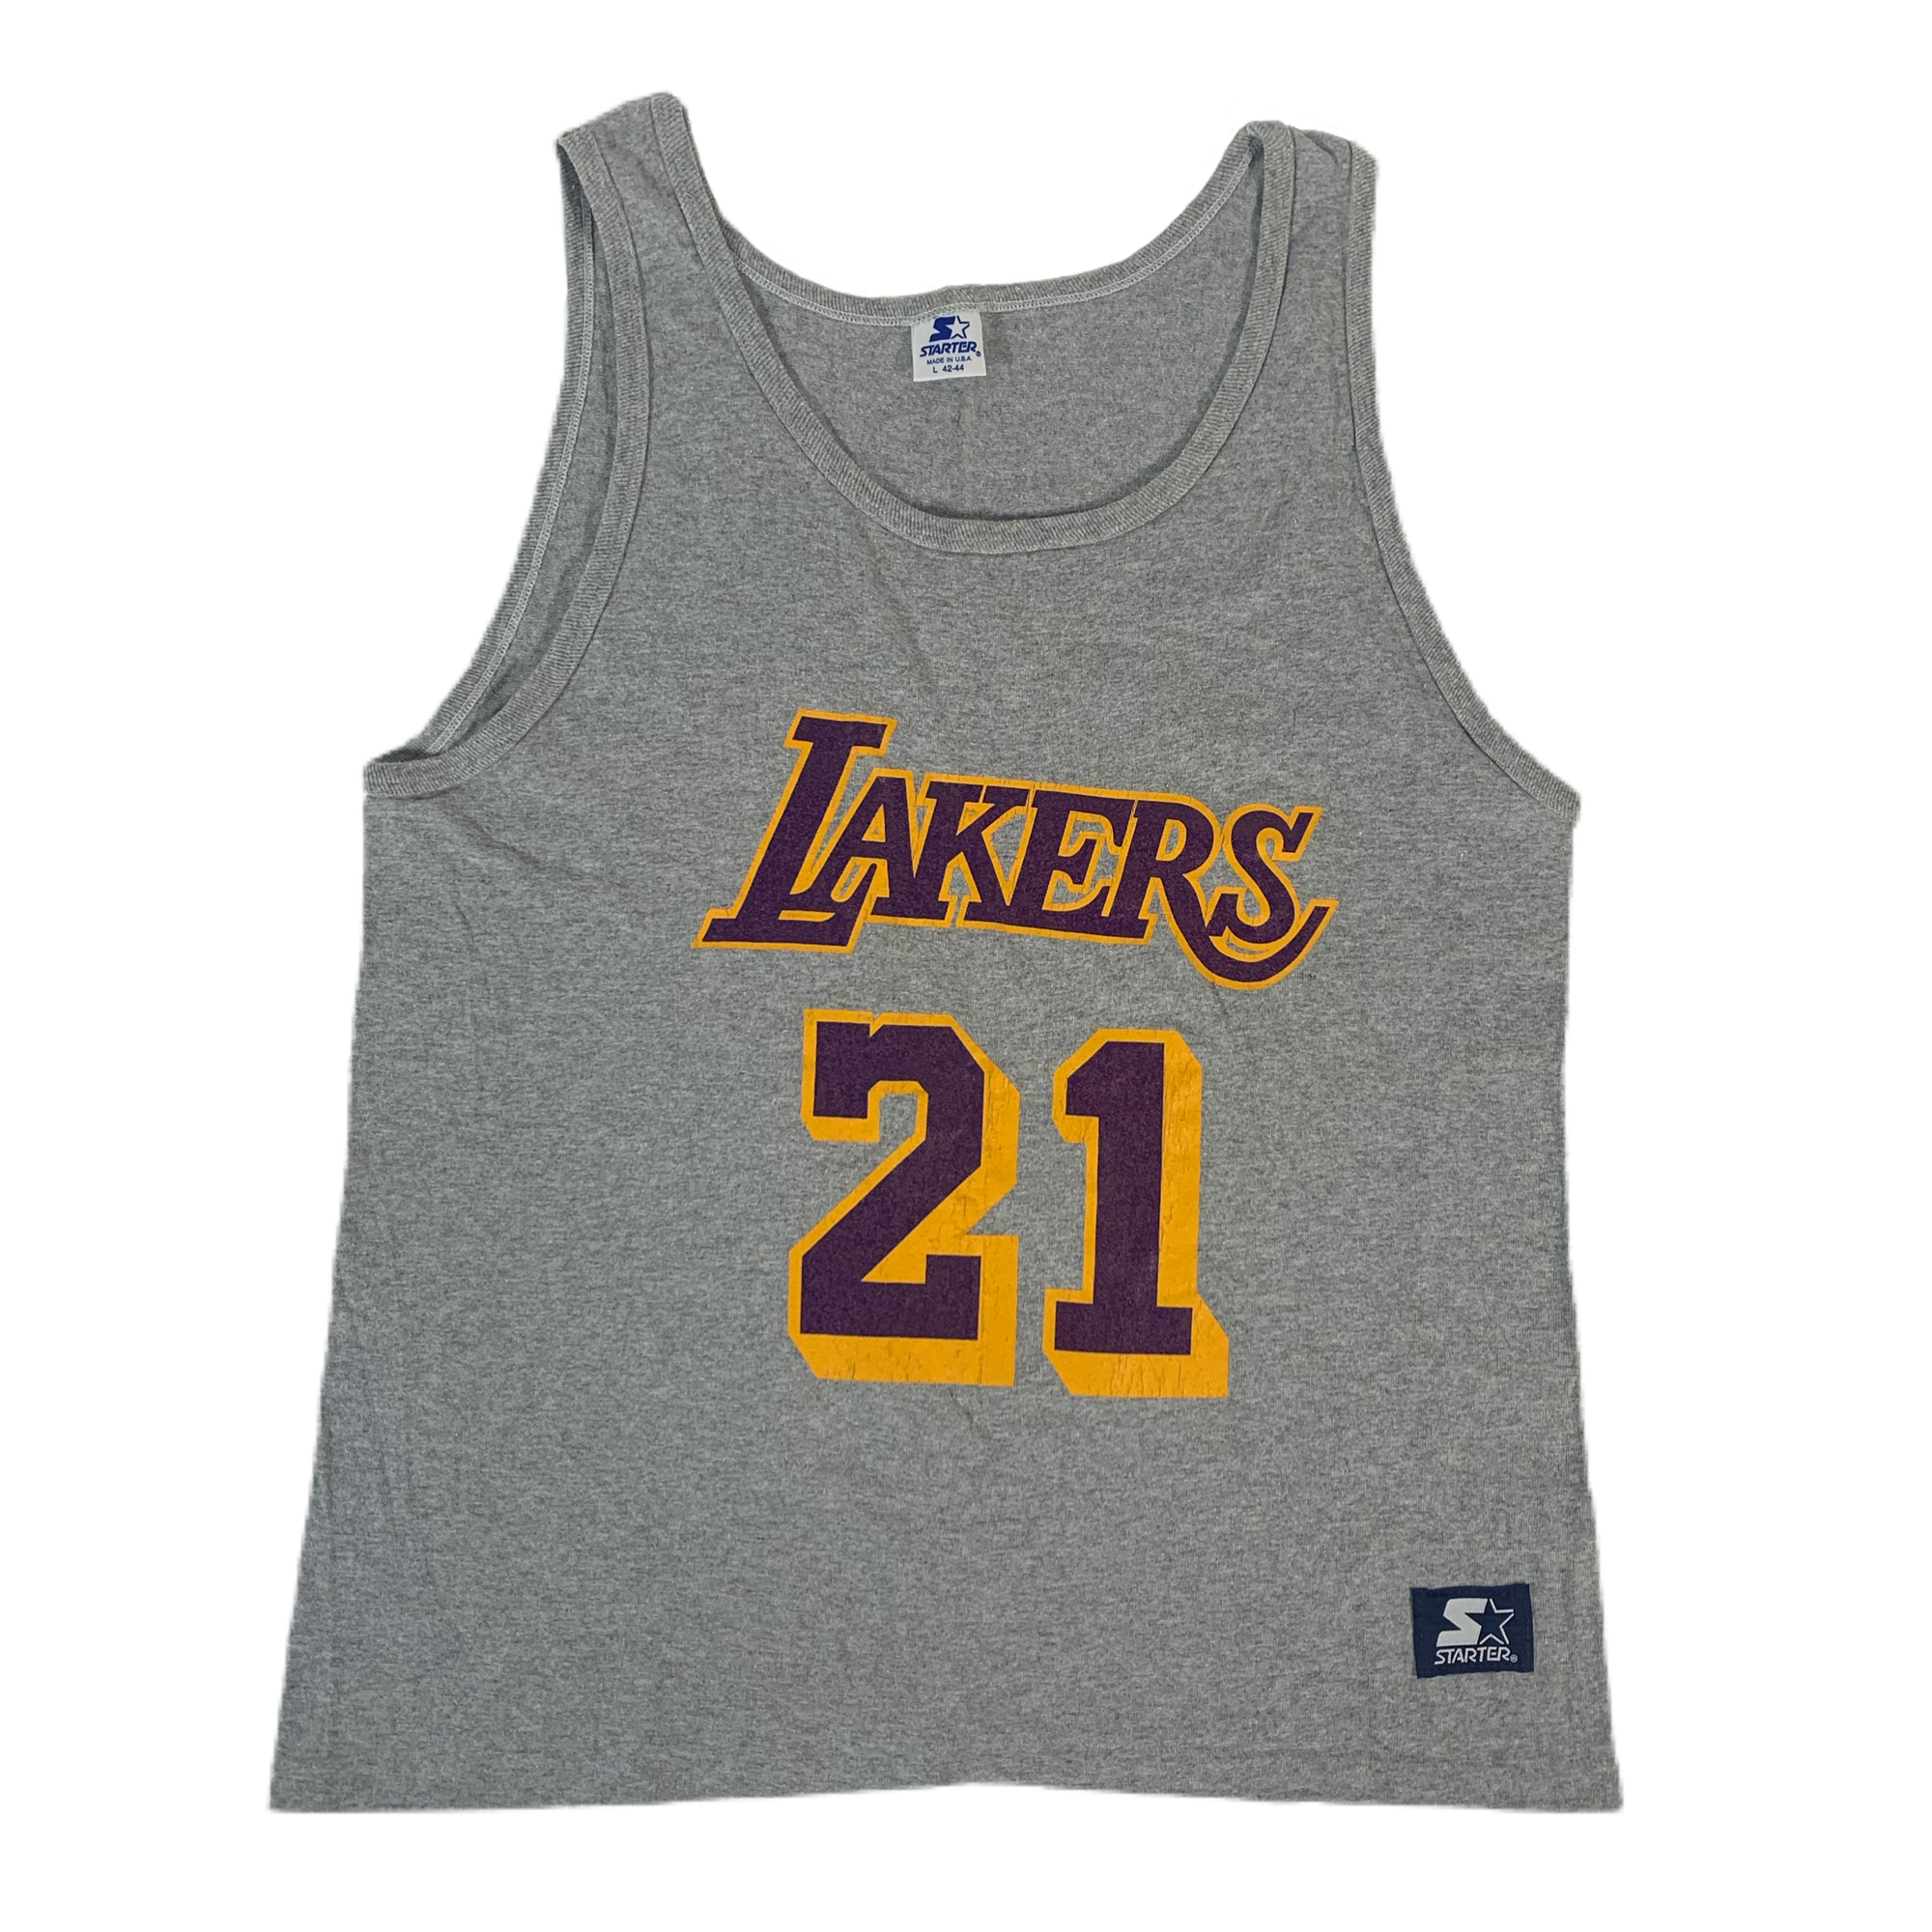 Vintage Los Angeles Lakers Michael Cooper "Starter" Tank Top - jointcustodydc